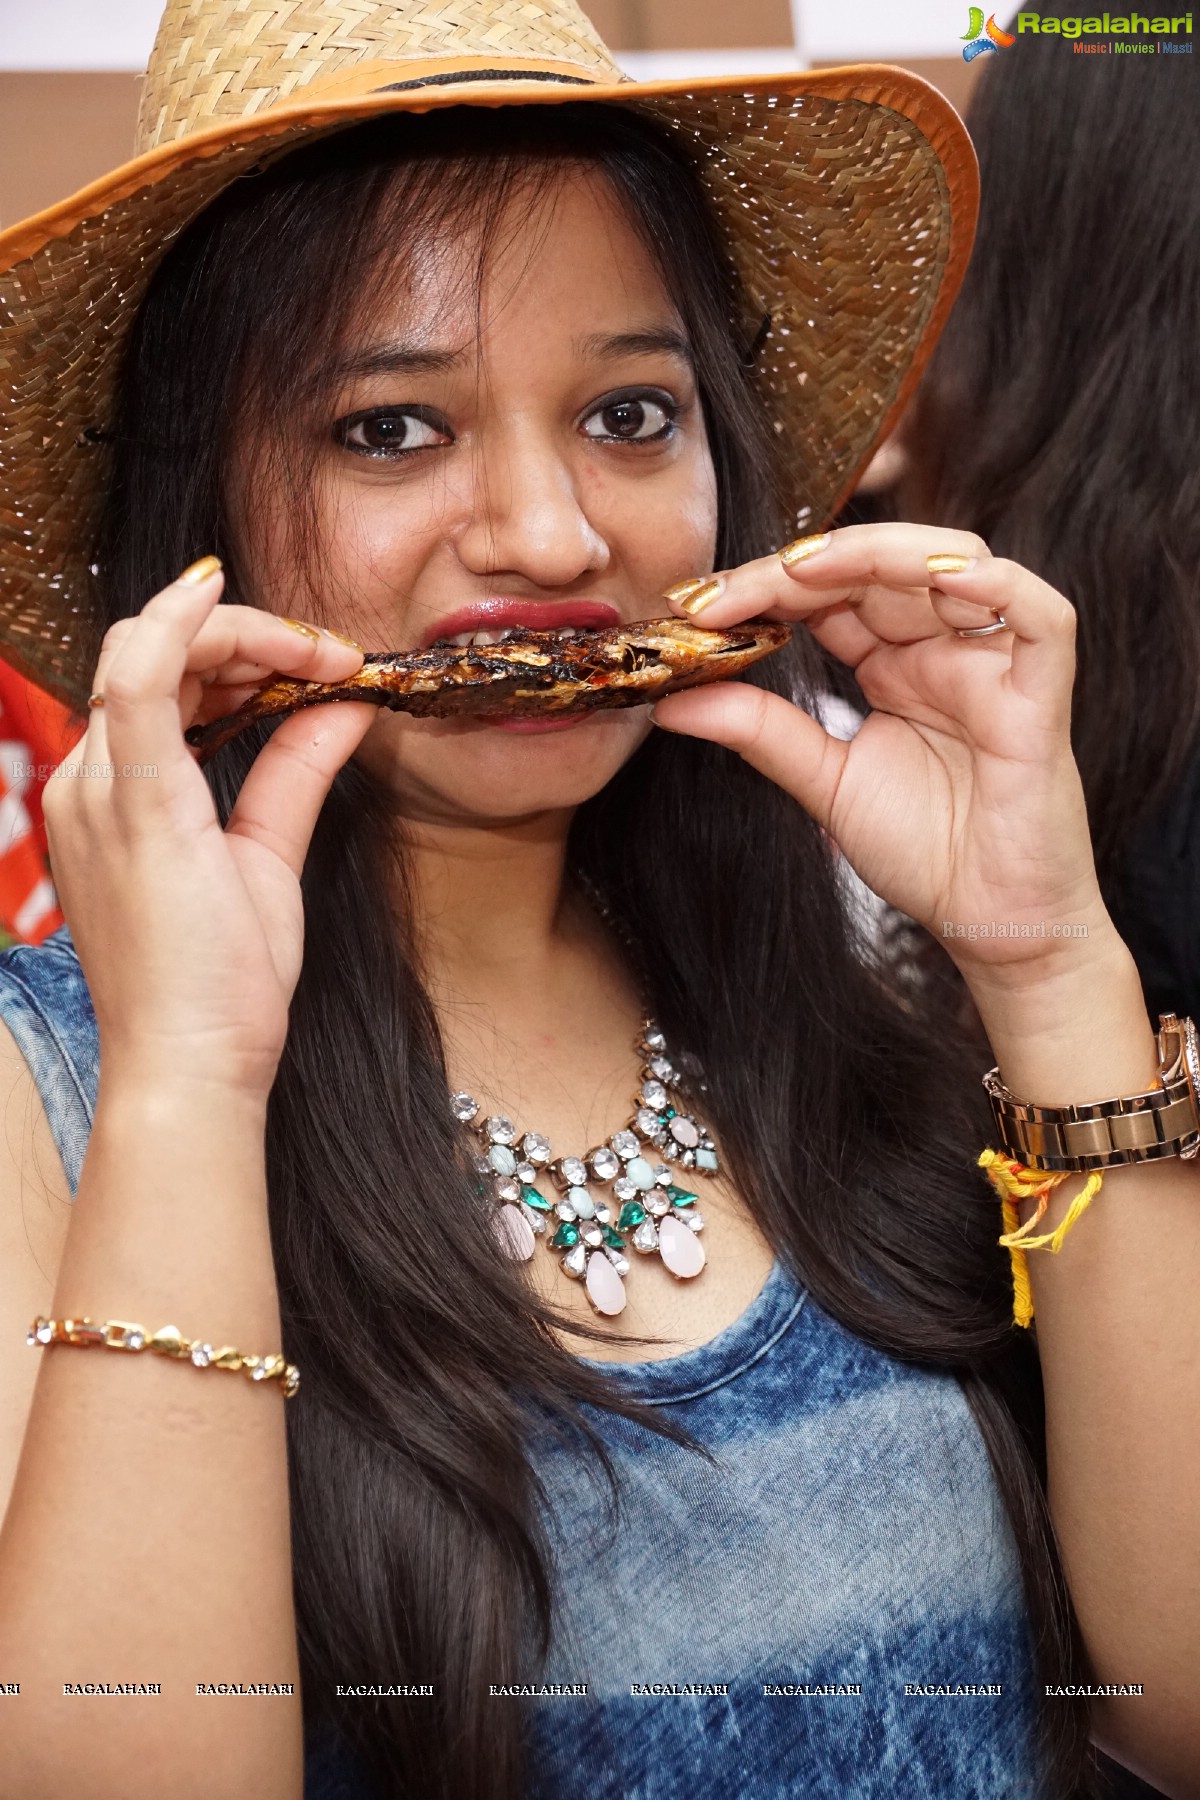 Goan Food Festival at Hotel Daspalla, Hyderabad